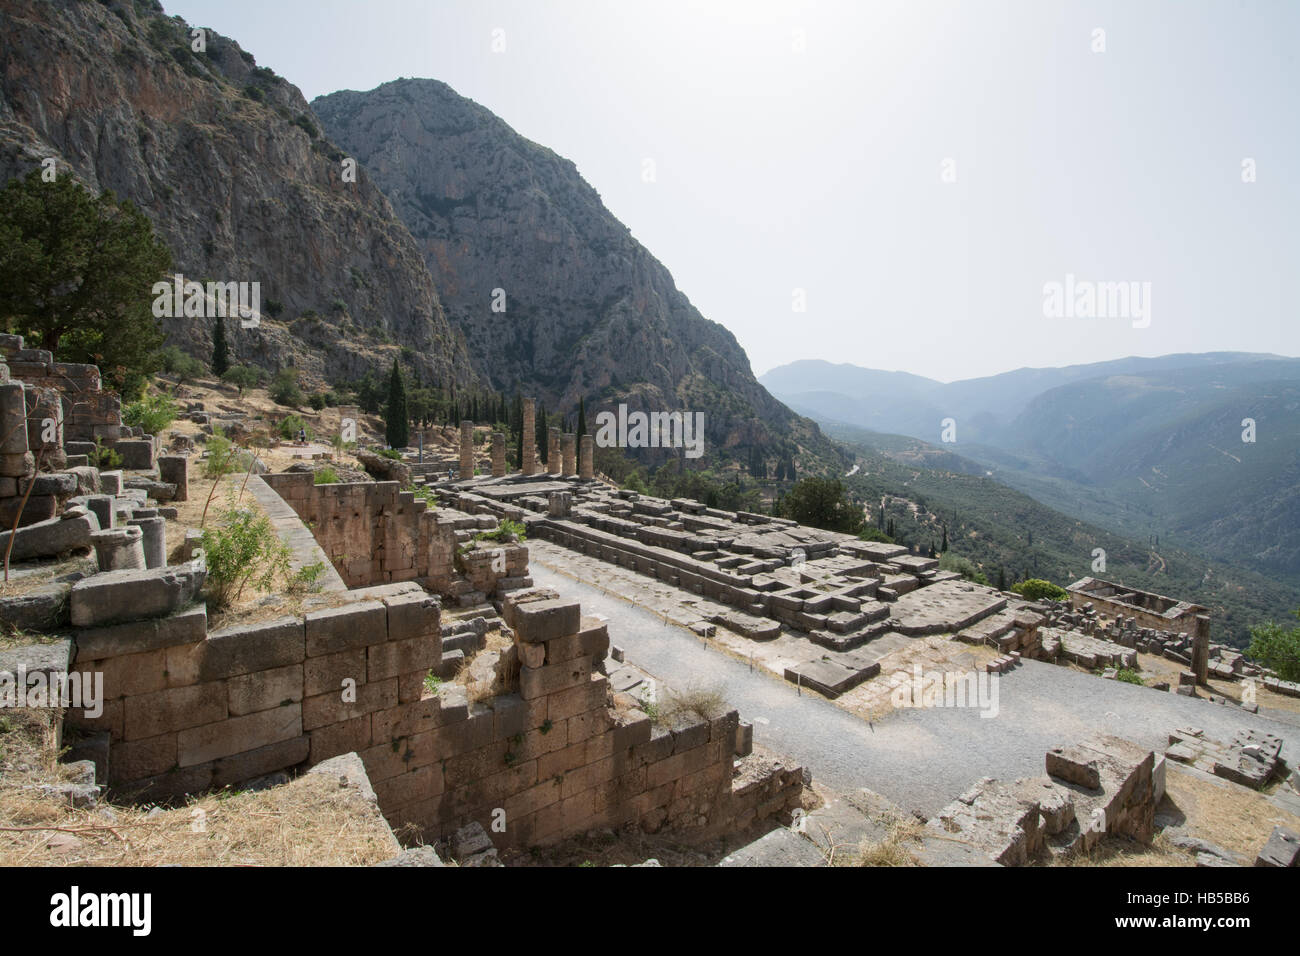 Le site archéologique de Delphes, en Grèce et le paysage de montagne environnant Banque D'Images